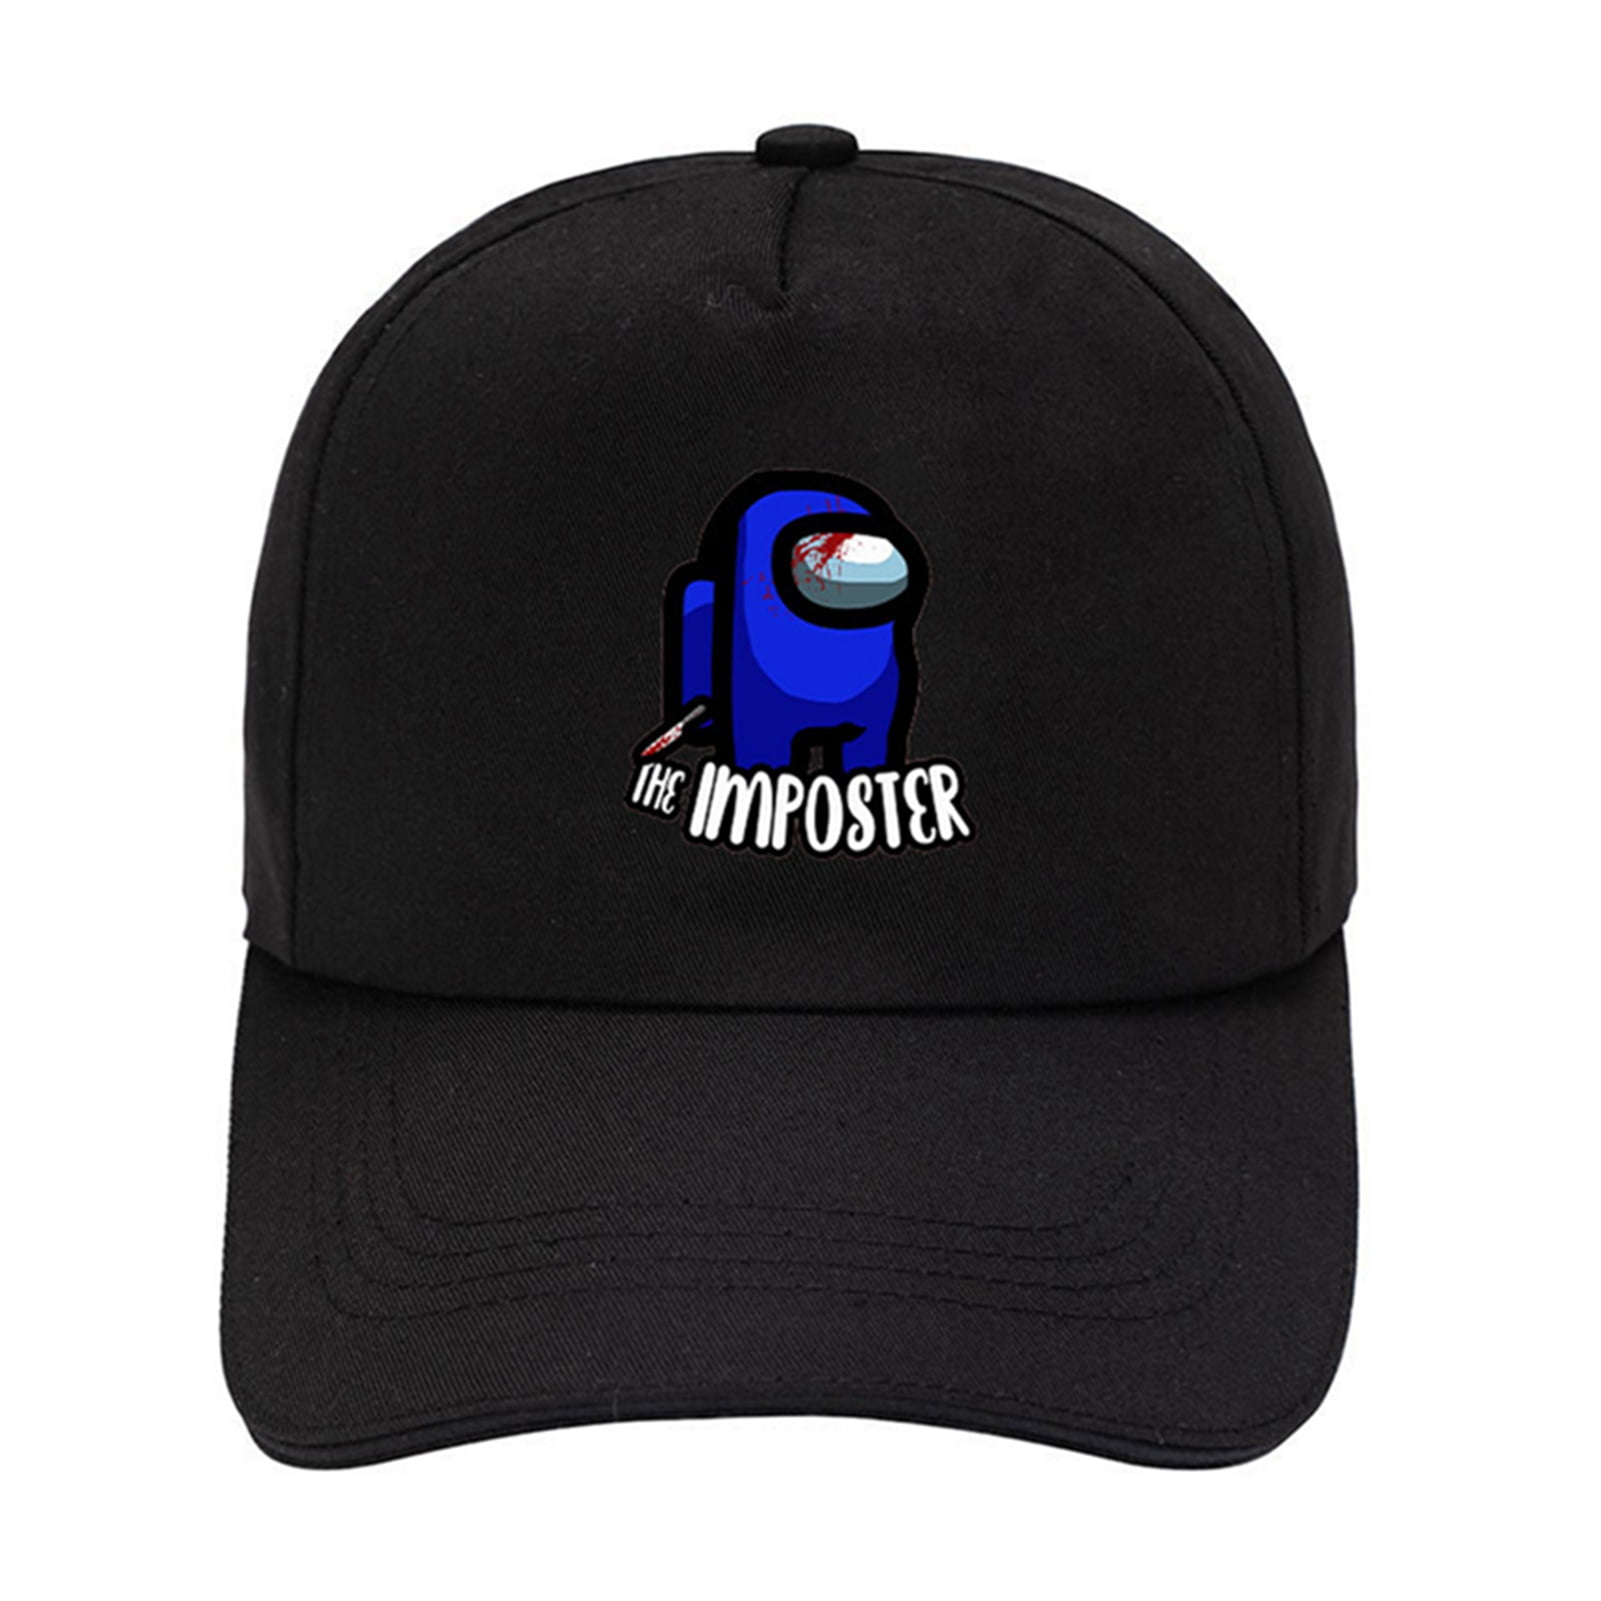 Unisex Hats Fitted Sports Cap Mens Women Unique Hats 